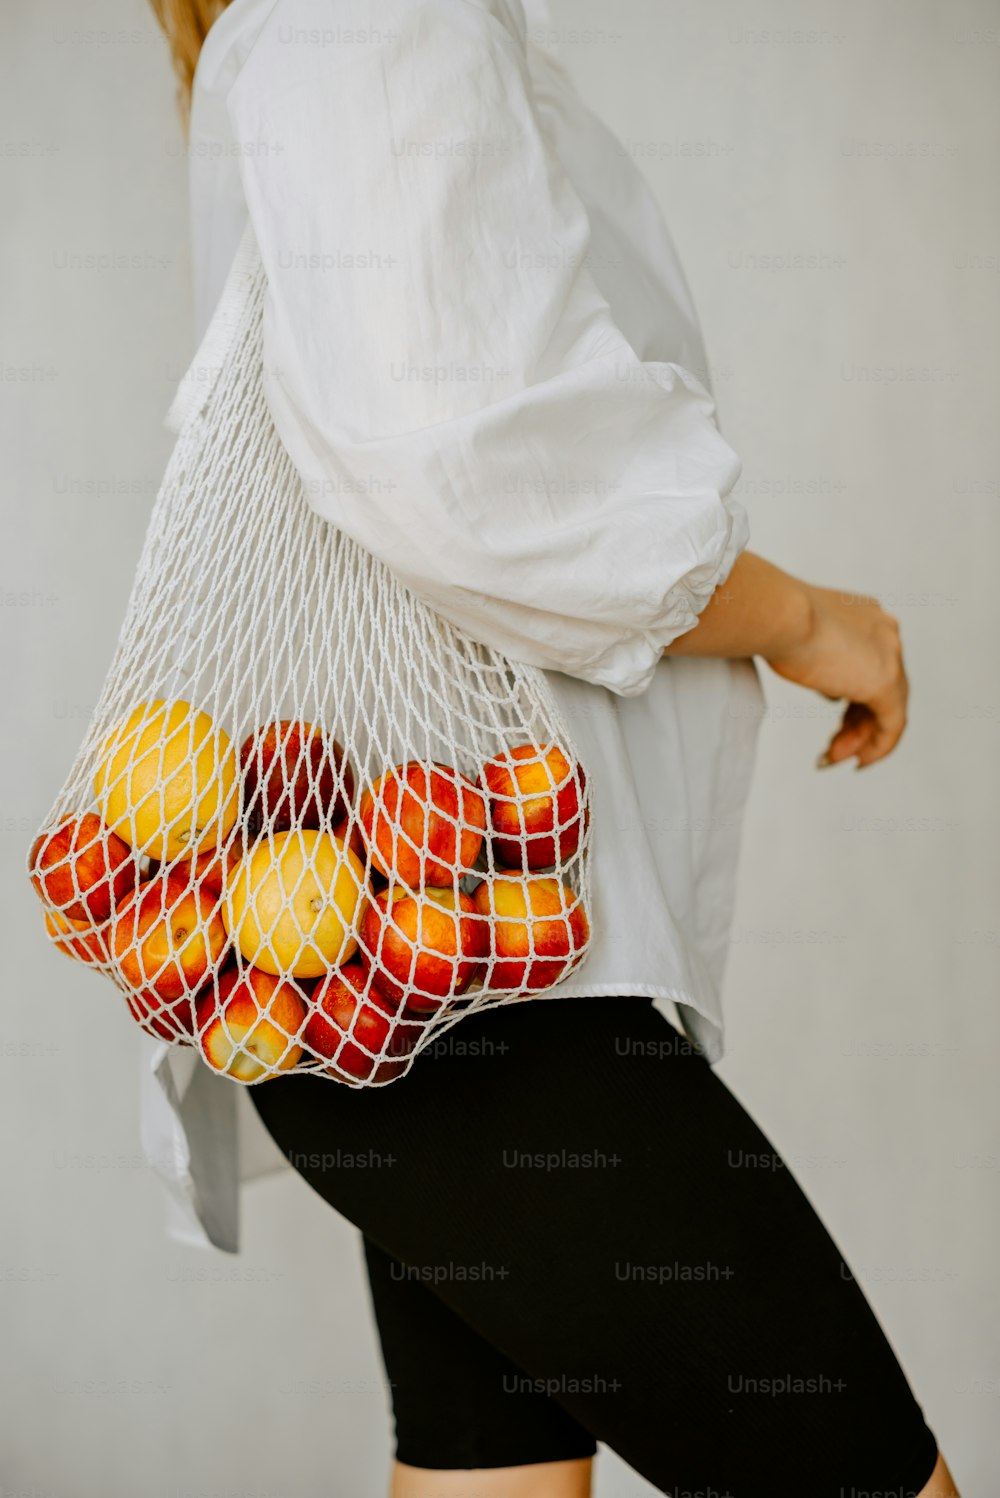 オレンジでいっぱいのメッシュバッグを運ぶ女性